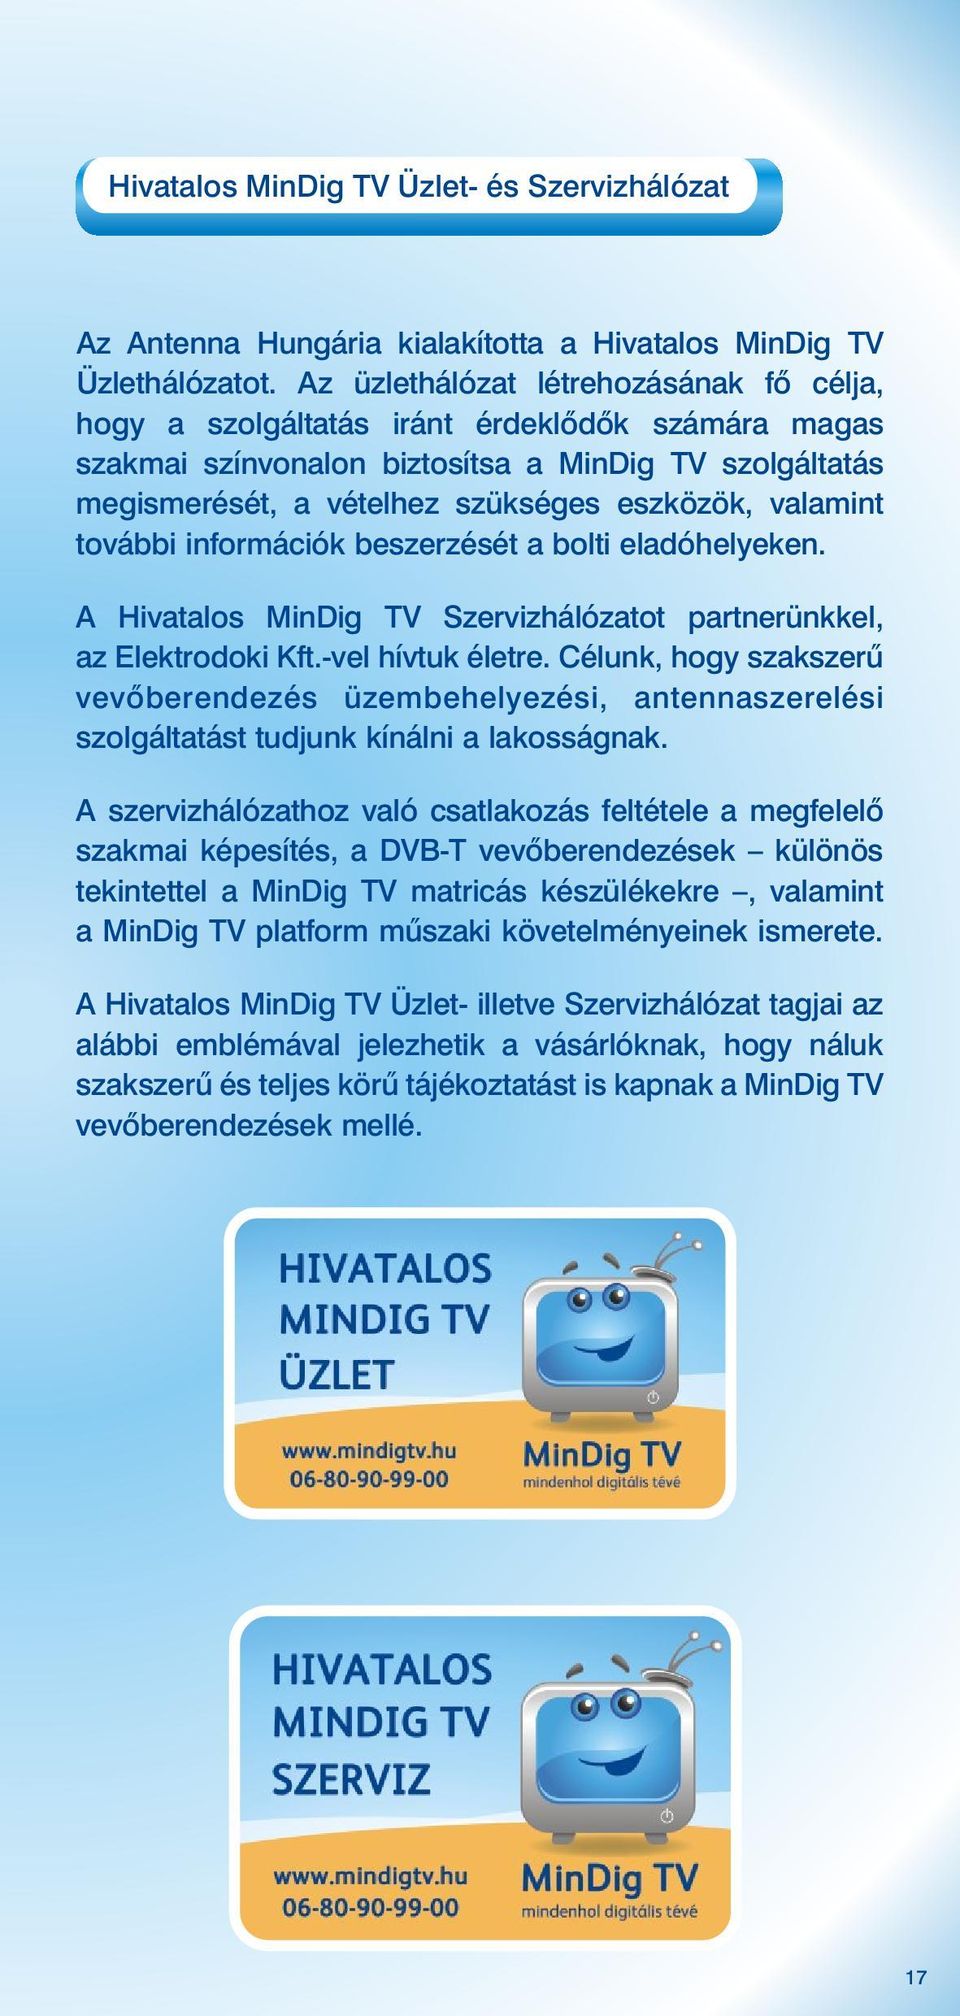 valamint további információk beszerzését a bolti eladóhelyeken. A Hivatalos MinDig TV Szervizhálózatot partnerünkkel, az Elektrodoki Kft.-vel hívtuk életre.